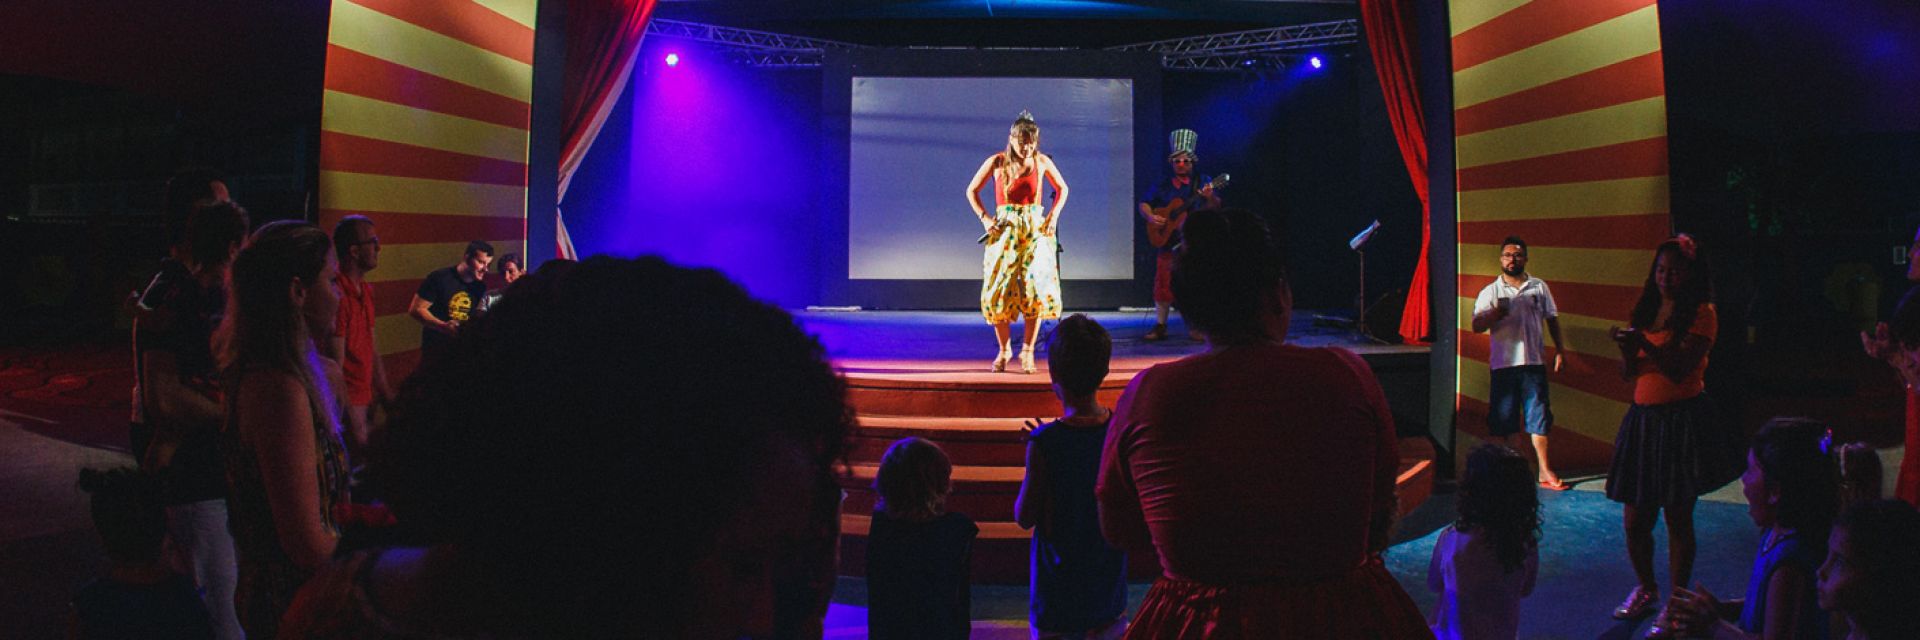 Aulas de dança no Rio Quente: conheça ritmos incríveis!